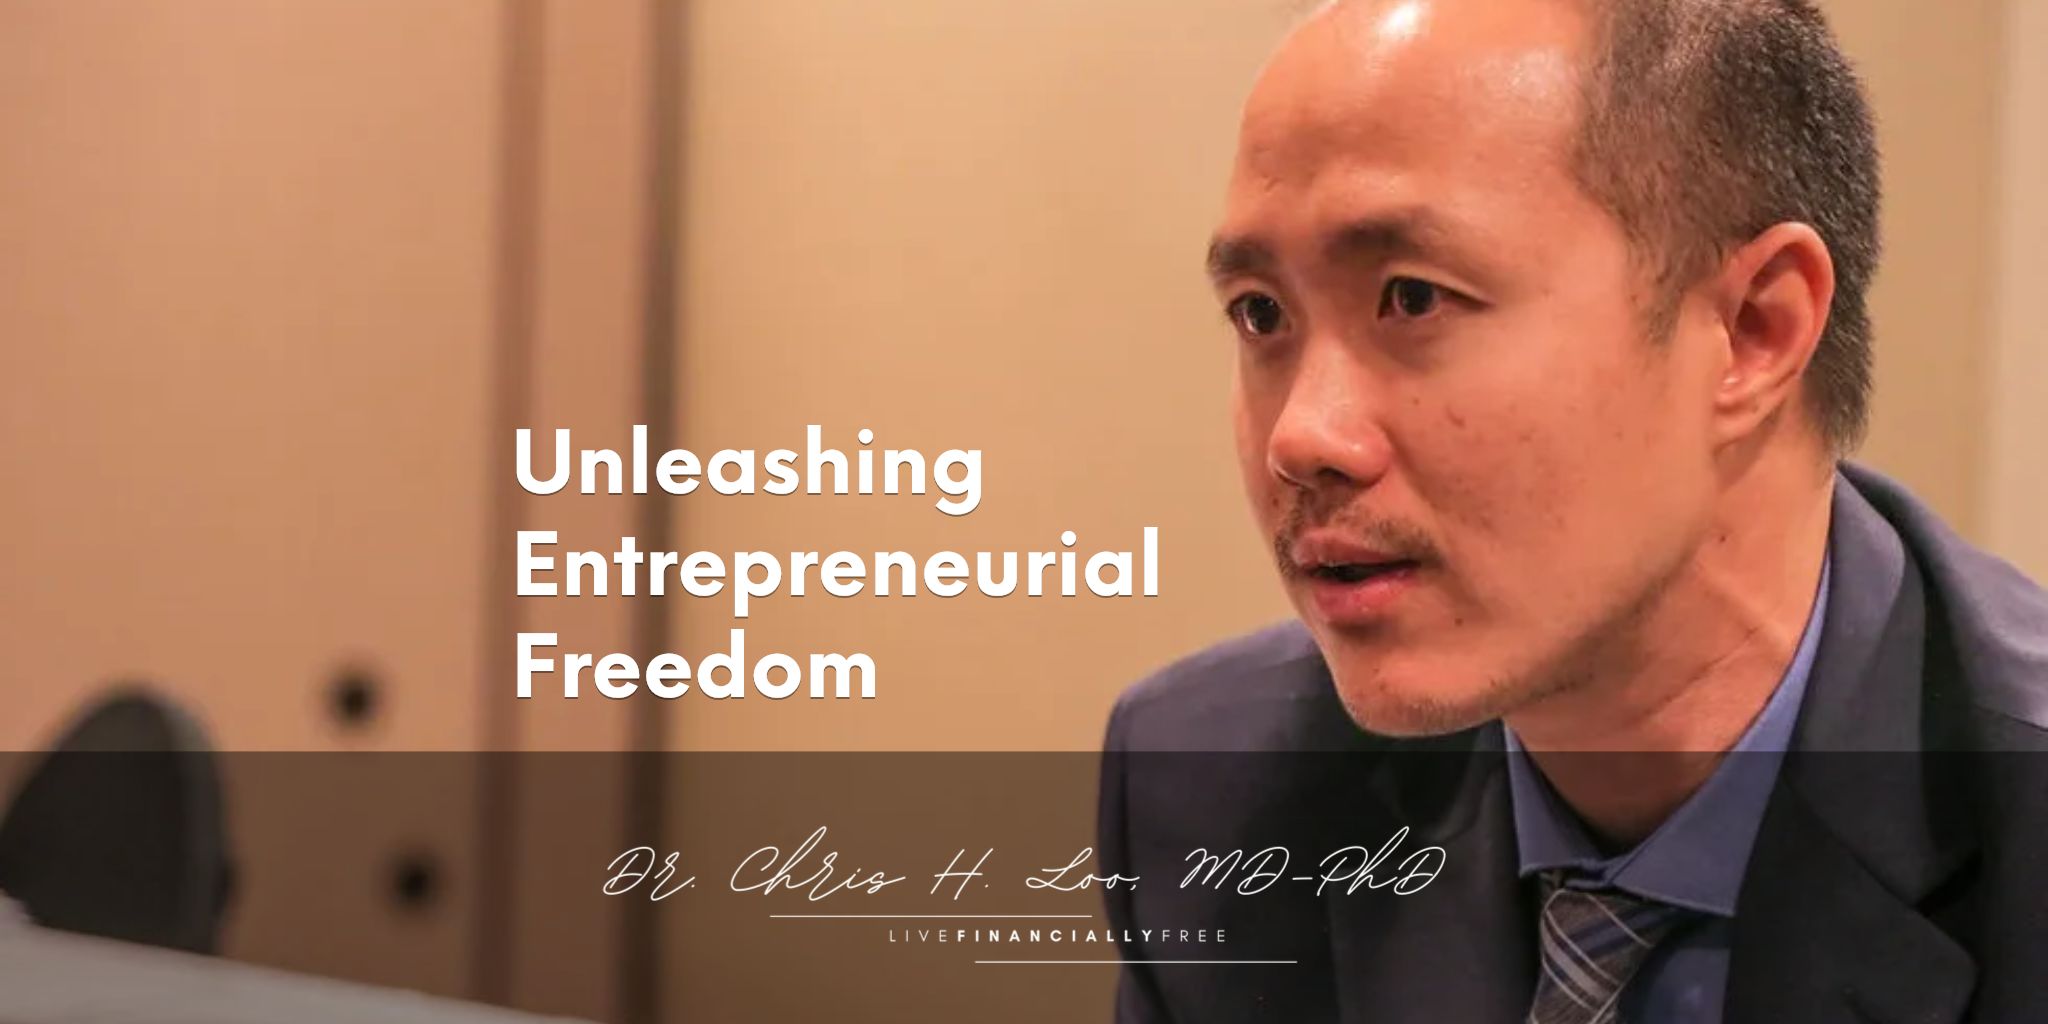 Unleashing Entrepreneurial Freedom from Jeremy Shapiro (Bay Area Mastermind)